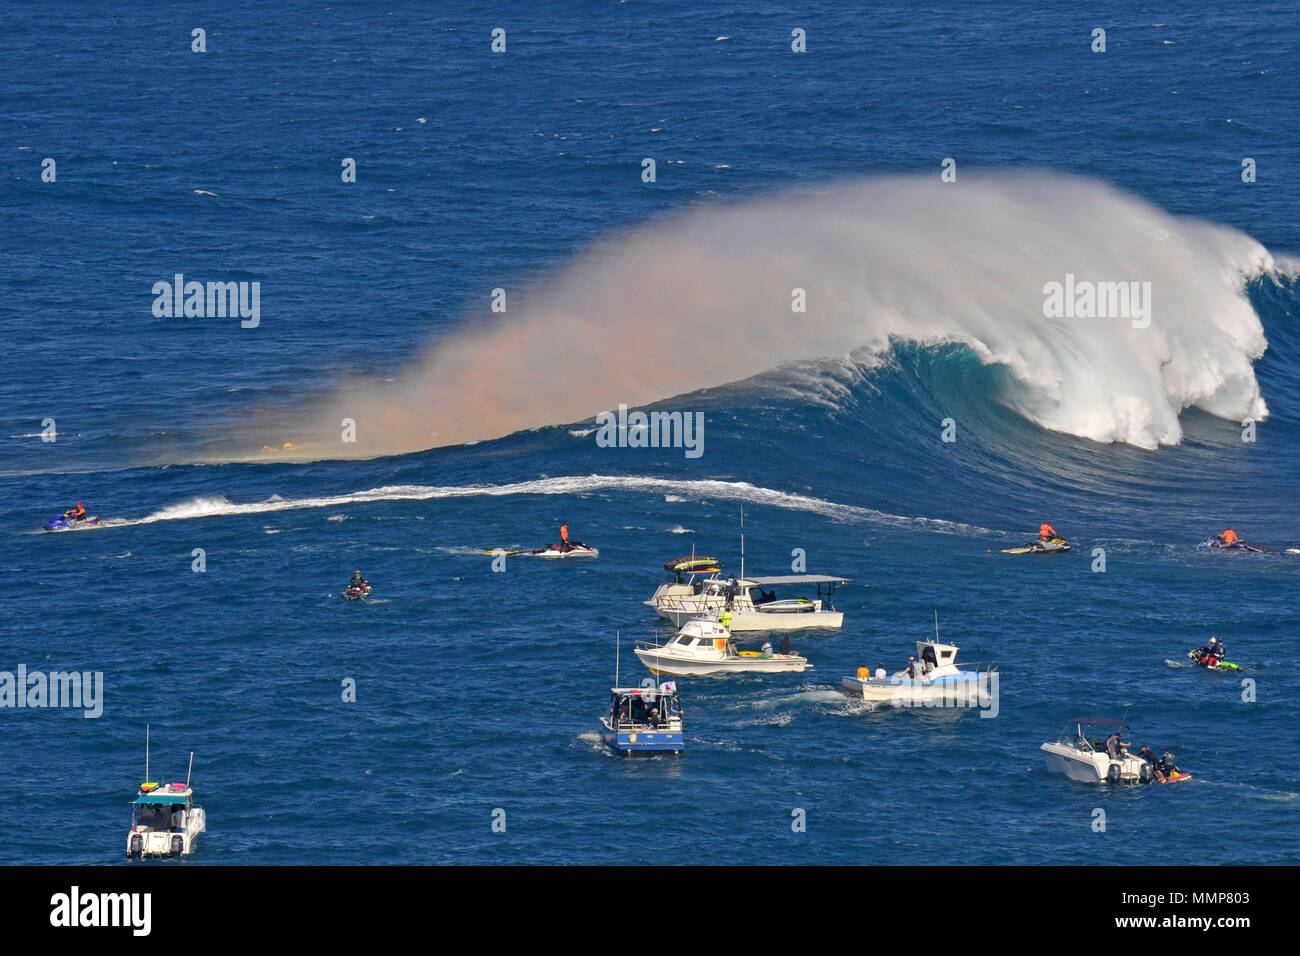 Support Team beobachtet eine riesige Welle während der 2015 Peahi Herausforderung Big Wave Surfen Meisterschaft in Kiefer, Maui, Hawaii, USA brechen Stockfoto